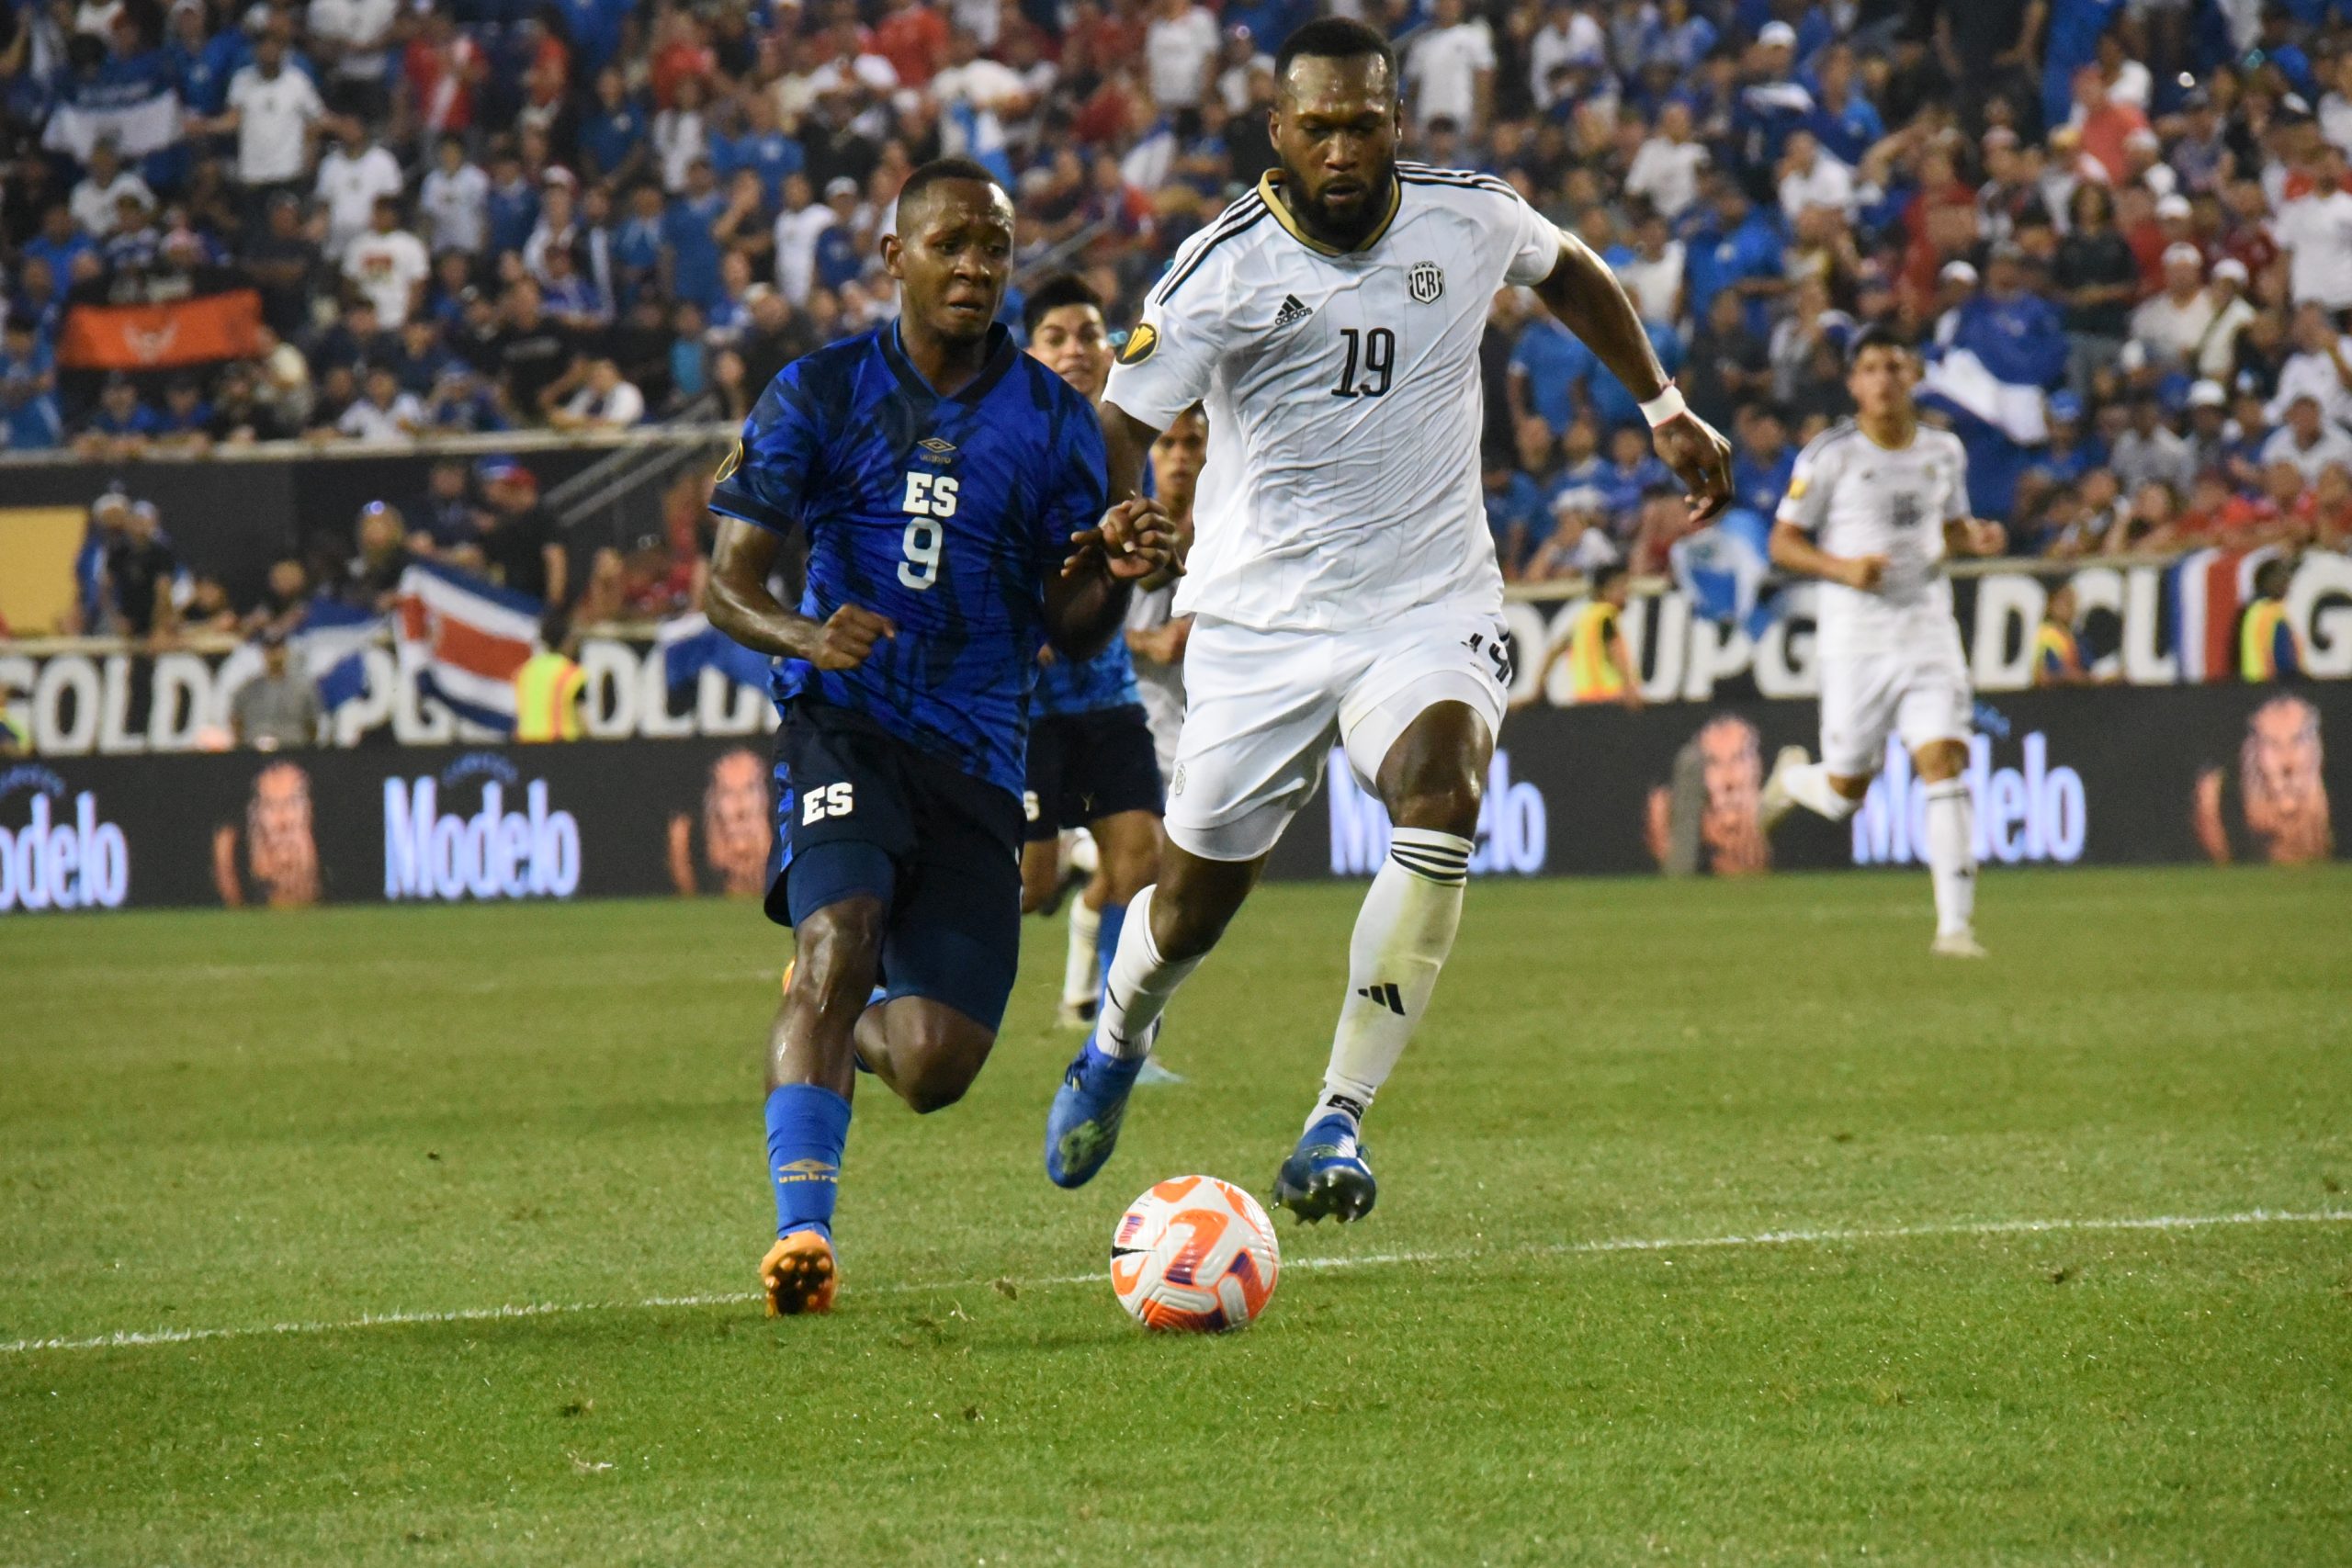 Costa Rica empata con sabor a derrota ante El Salvador